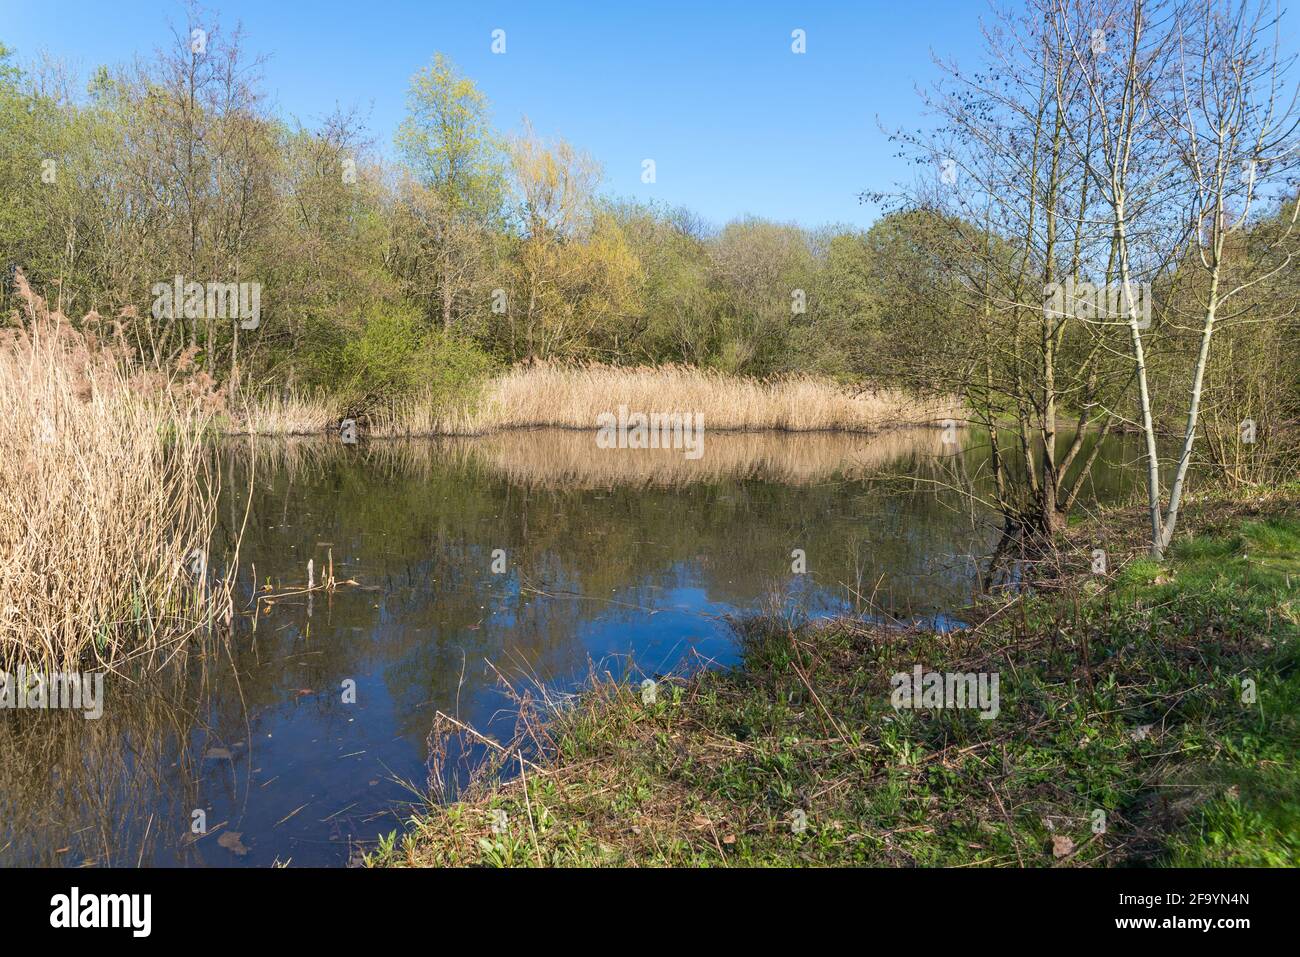 La riserva naturale locale di Sheepwash a Sandwell, West Midlands, Regno Unito è stata creata da aree desolate industriali rigenerate nel 1981, il fiume Tame lo attraversa. Foto Stock